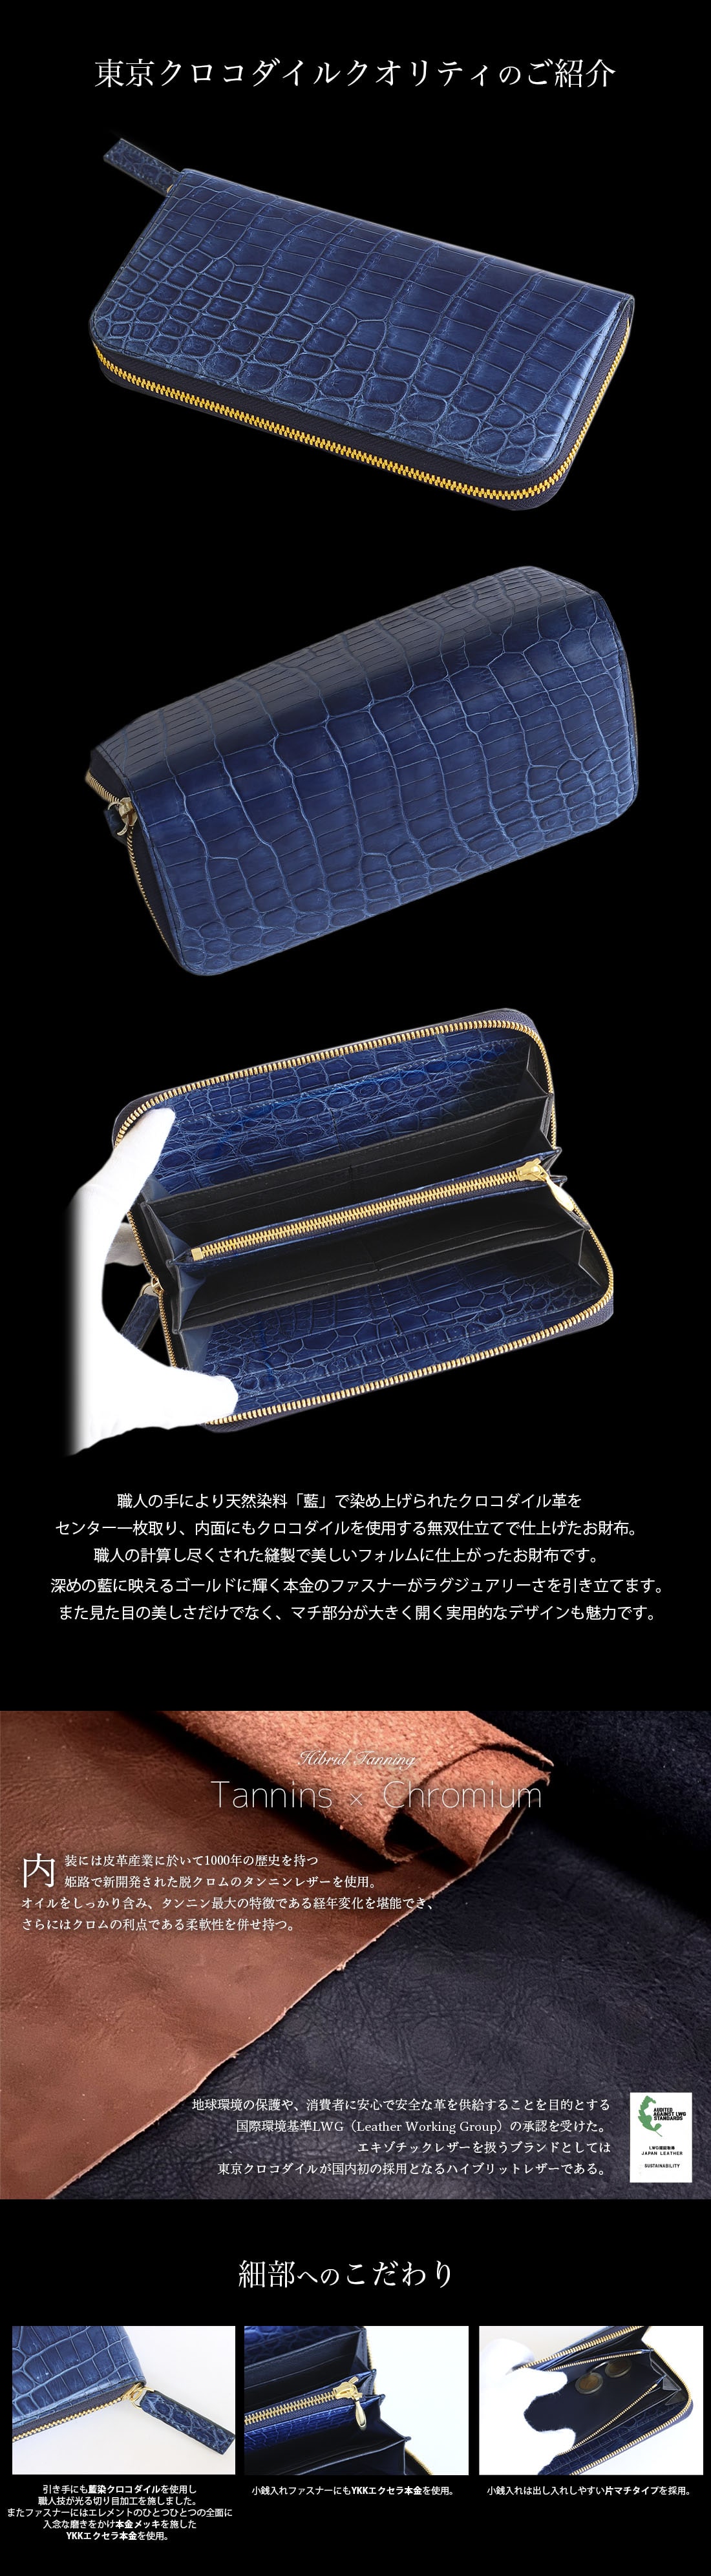 クロコダイル長財布 ラウンド メンズ レディース 藍染 ブルー 大容量 日本製 ブランド 東京クロコダイル